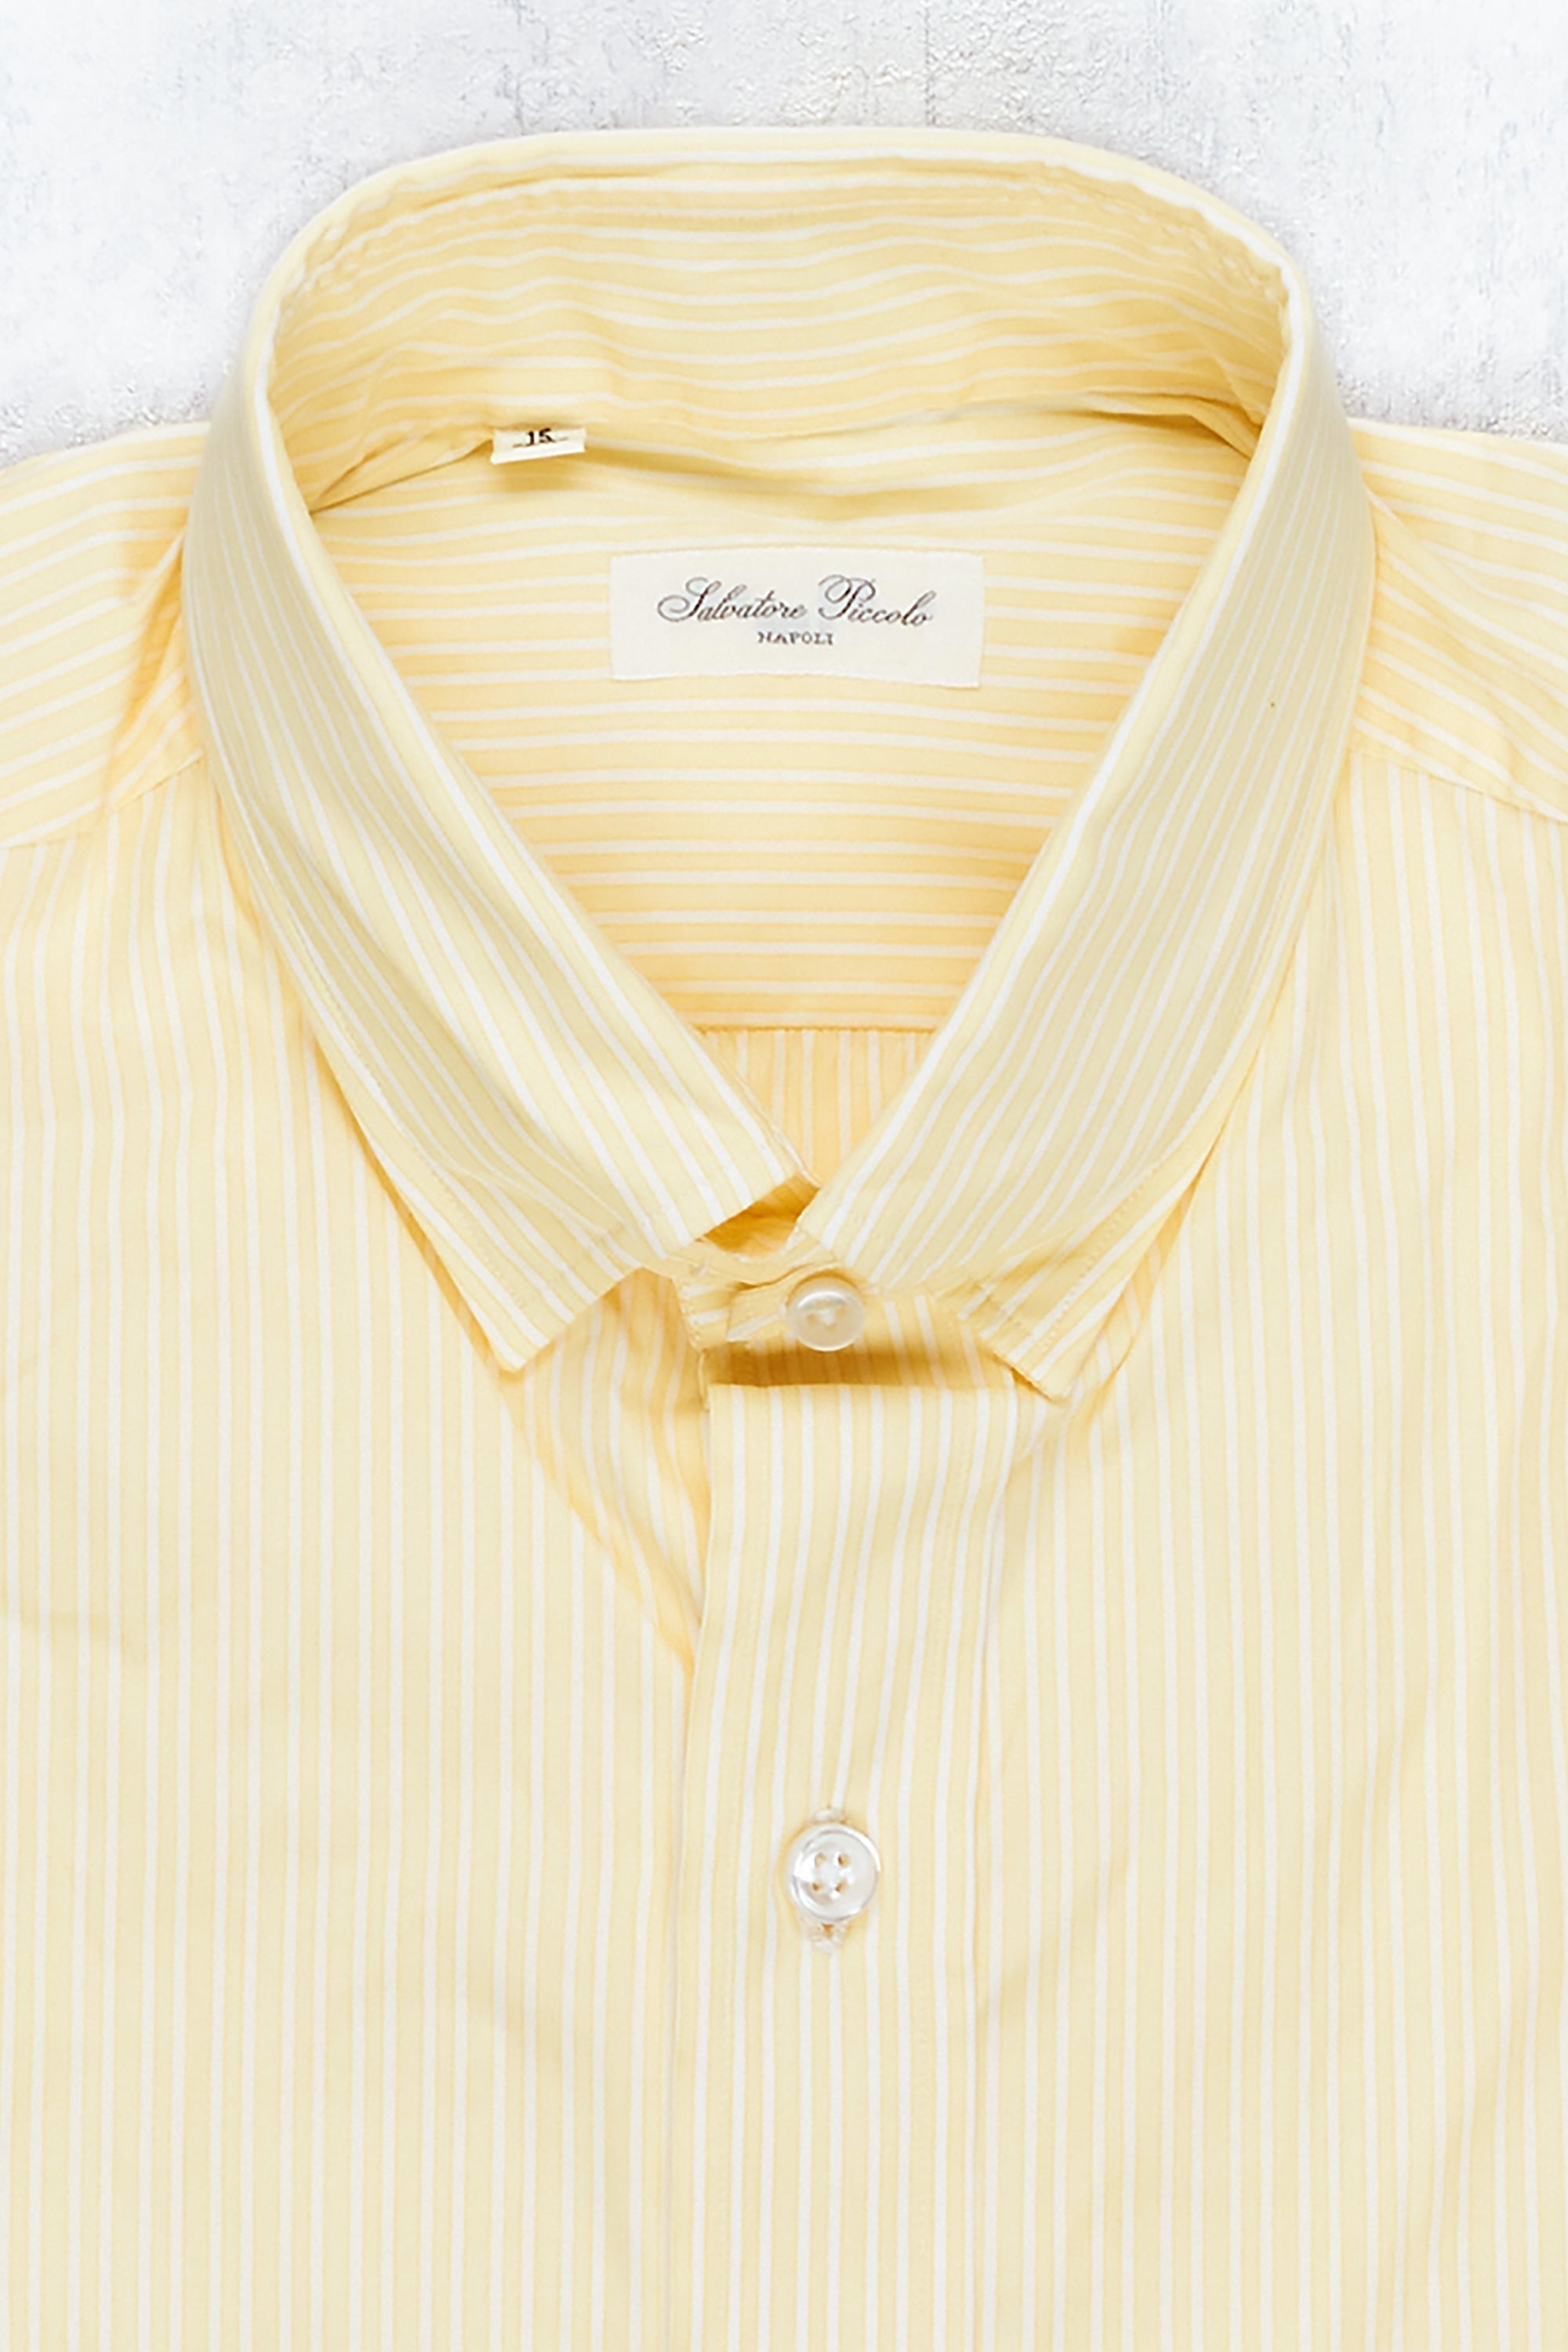 Salvatore Piccolo Yellow/White Stripe Cotton Spread Collar Shirt